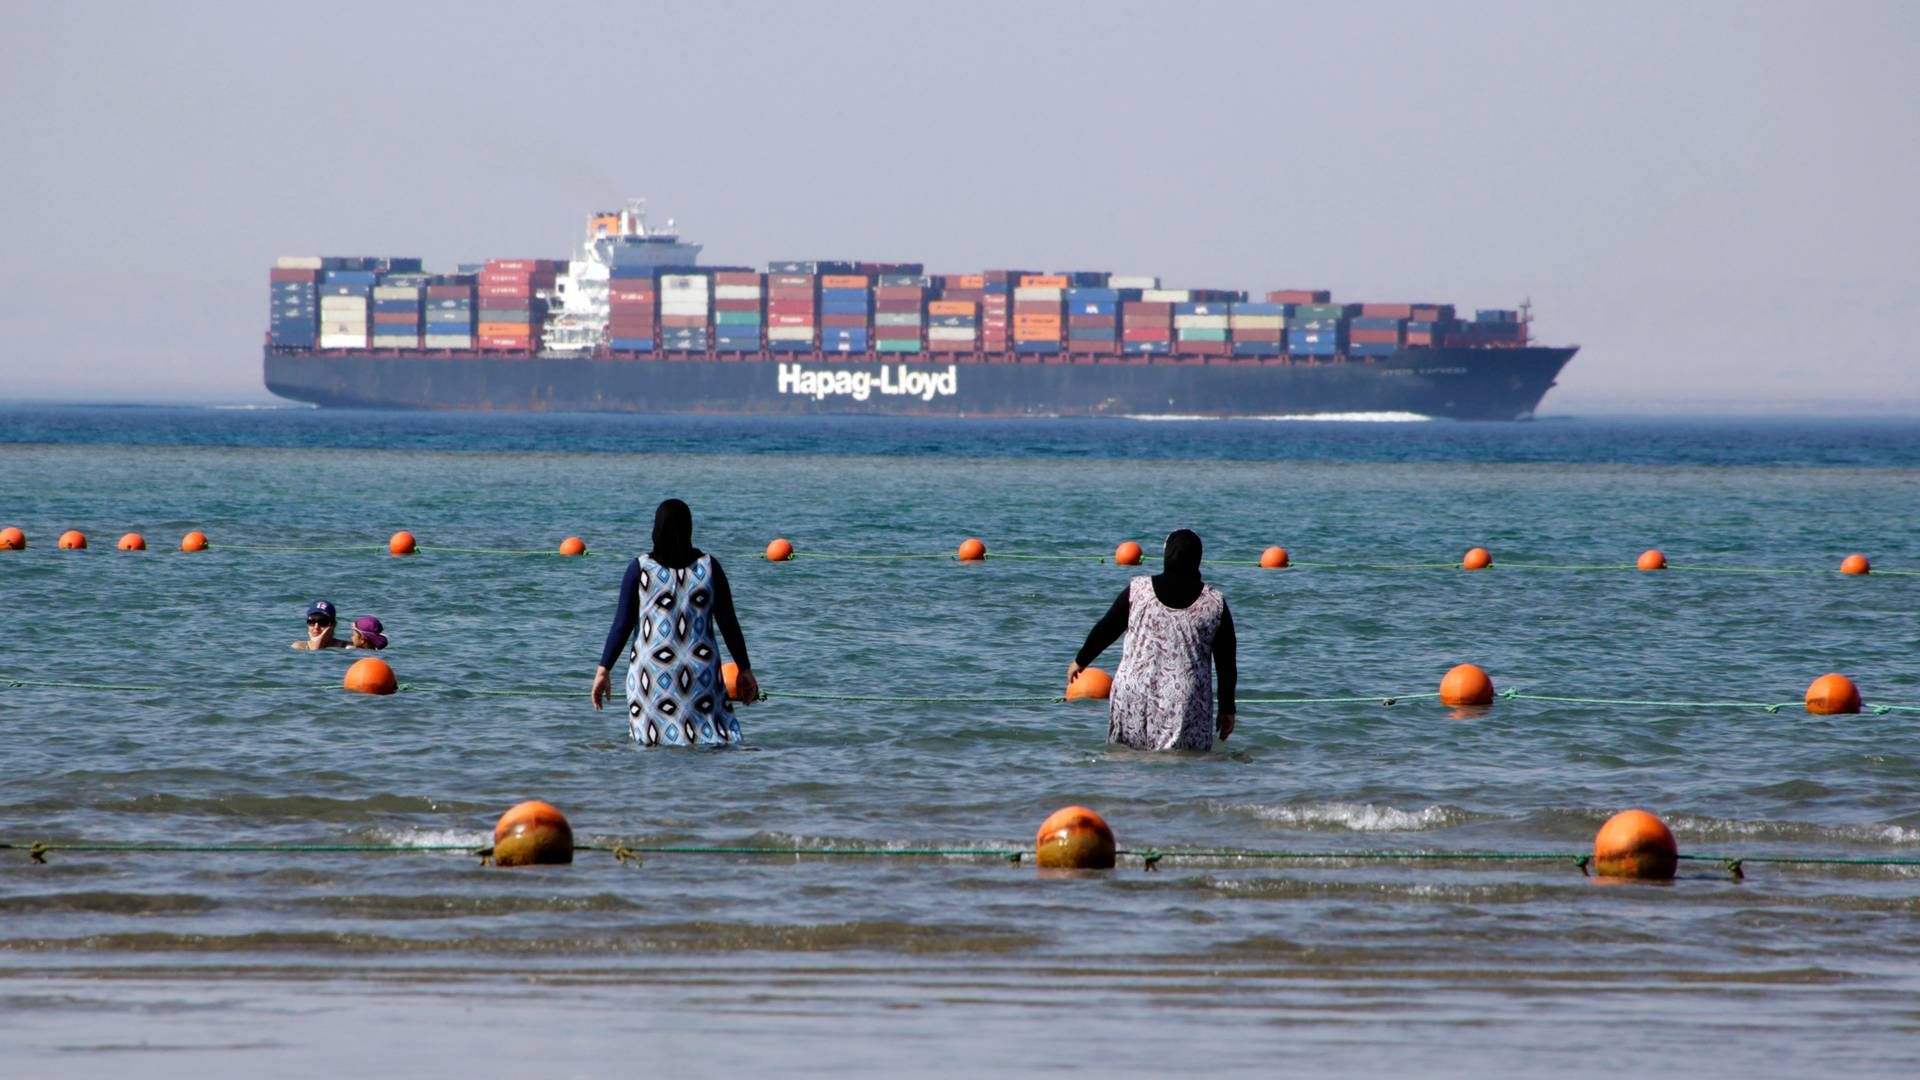 Containerskib fra Hapag-Lloyd med kurs mod Det Røde Hav. | Foto: Amr Nabil/AP/Ritzau Scanpix